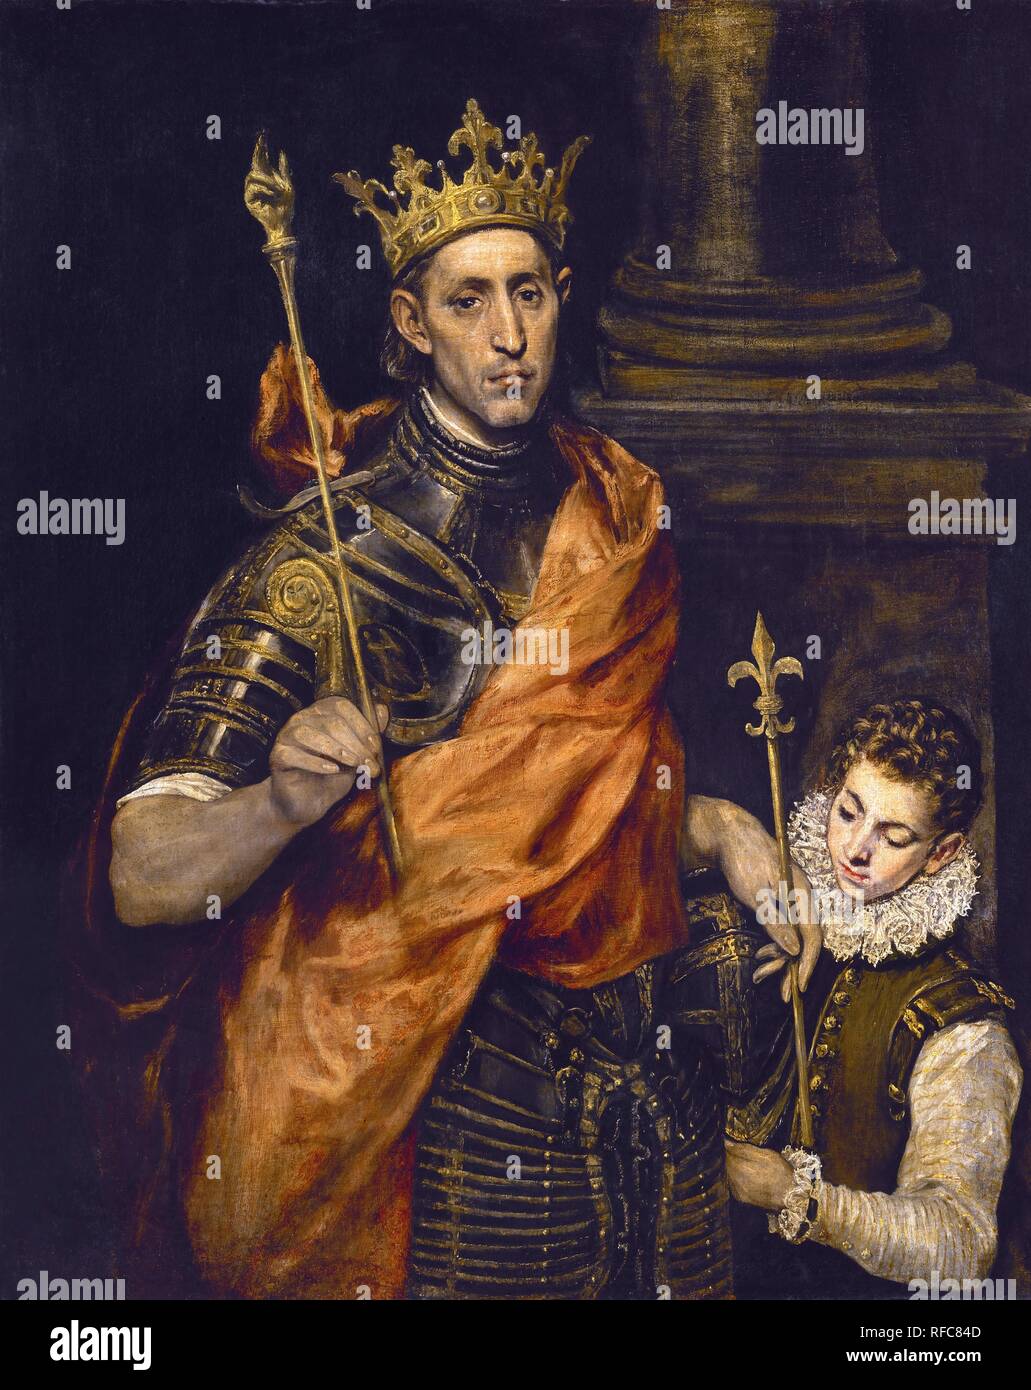 "Louis IX de France, et une page', 1585-1590, huile sur toile, 120 x 96 cm. Auteur : EL GRECO. Lieu : MUSÉE DU LOUVRE-peintures. La France. Banque D'Images